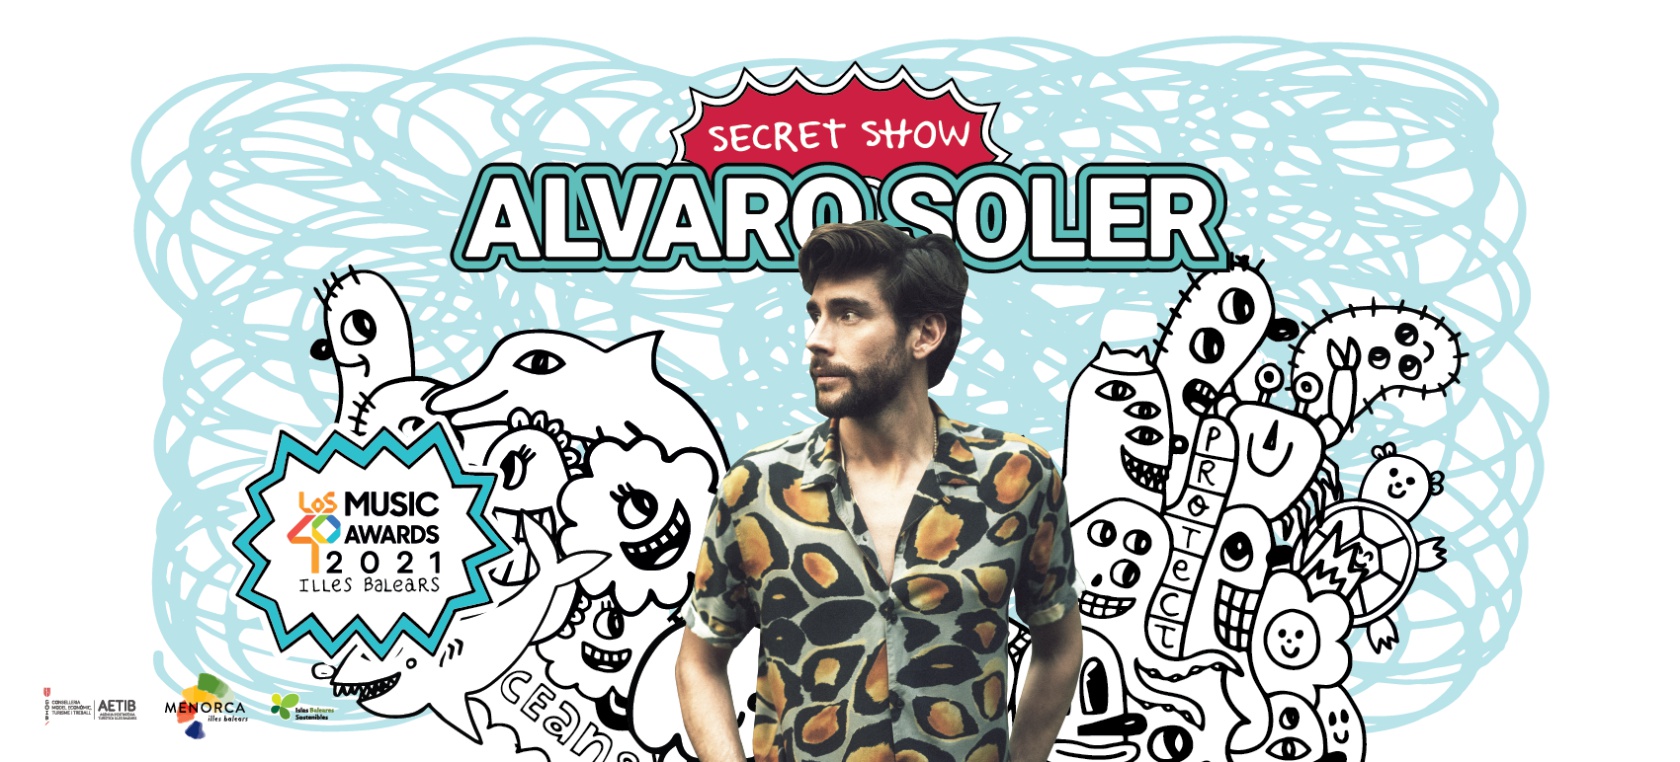 Alvaro Soler se une a los Secret Shows de LOS40